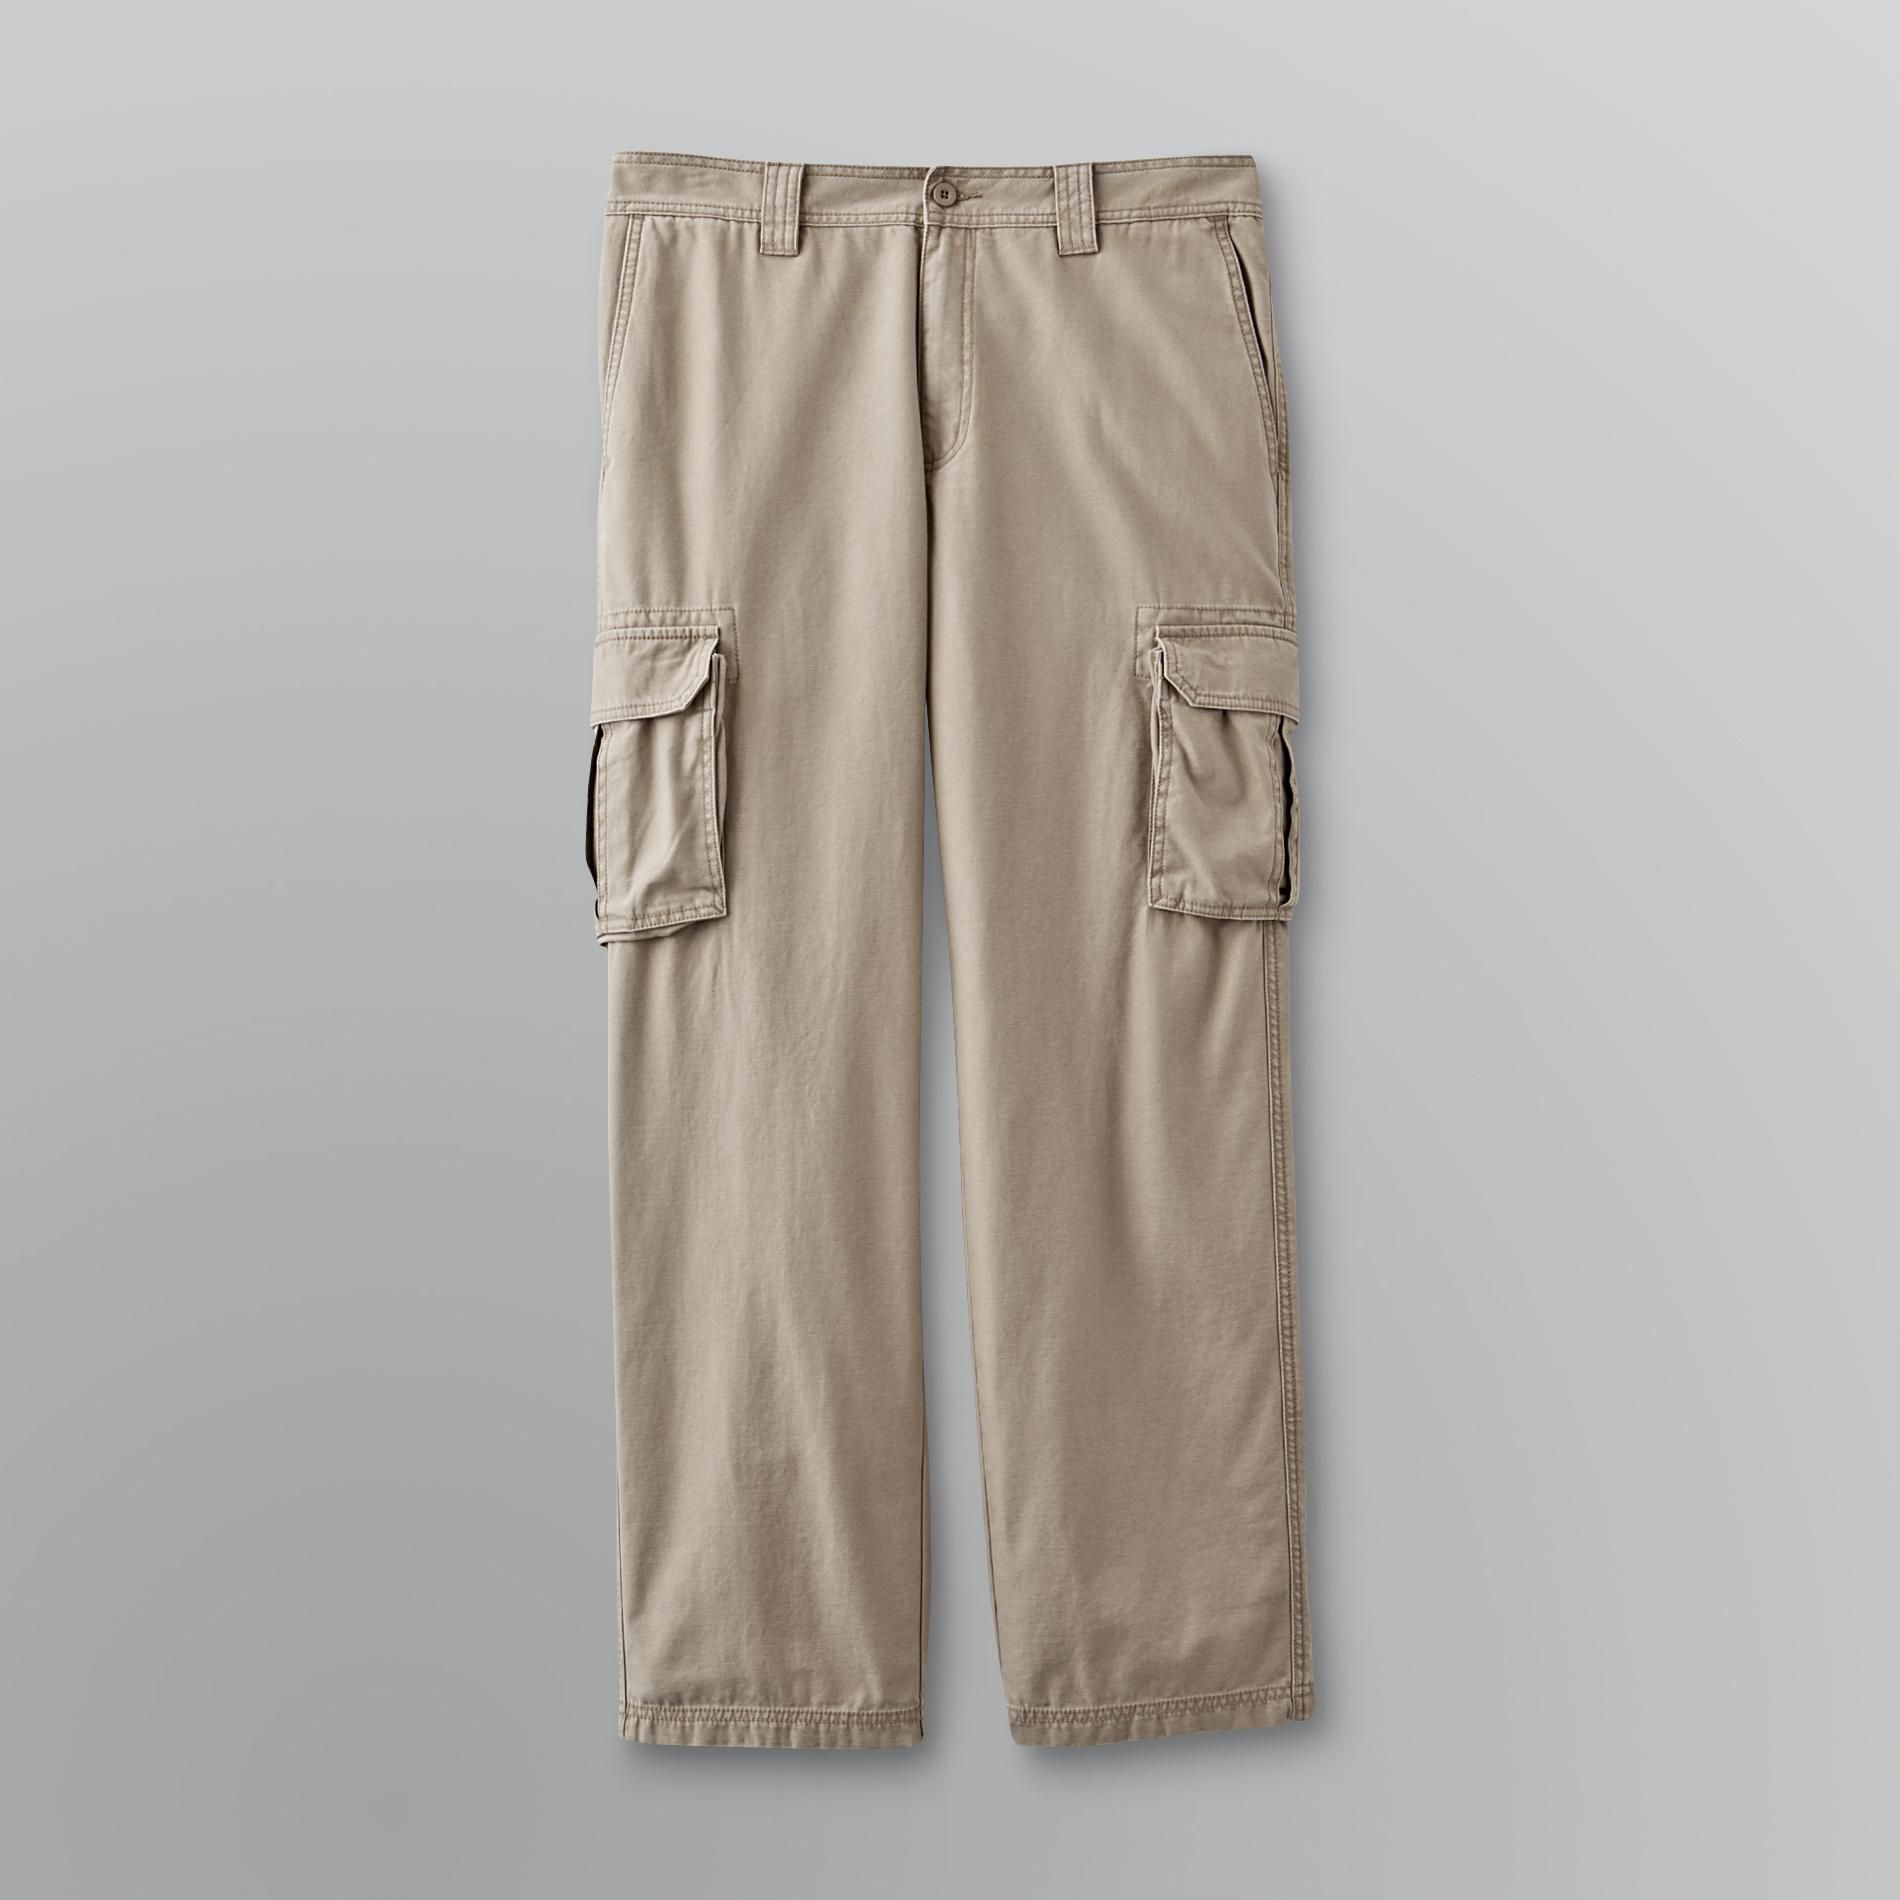 Outdoor Life Men's Cargo Pants